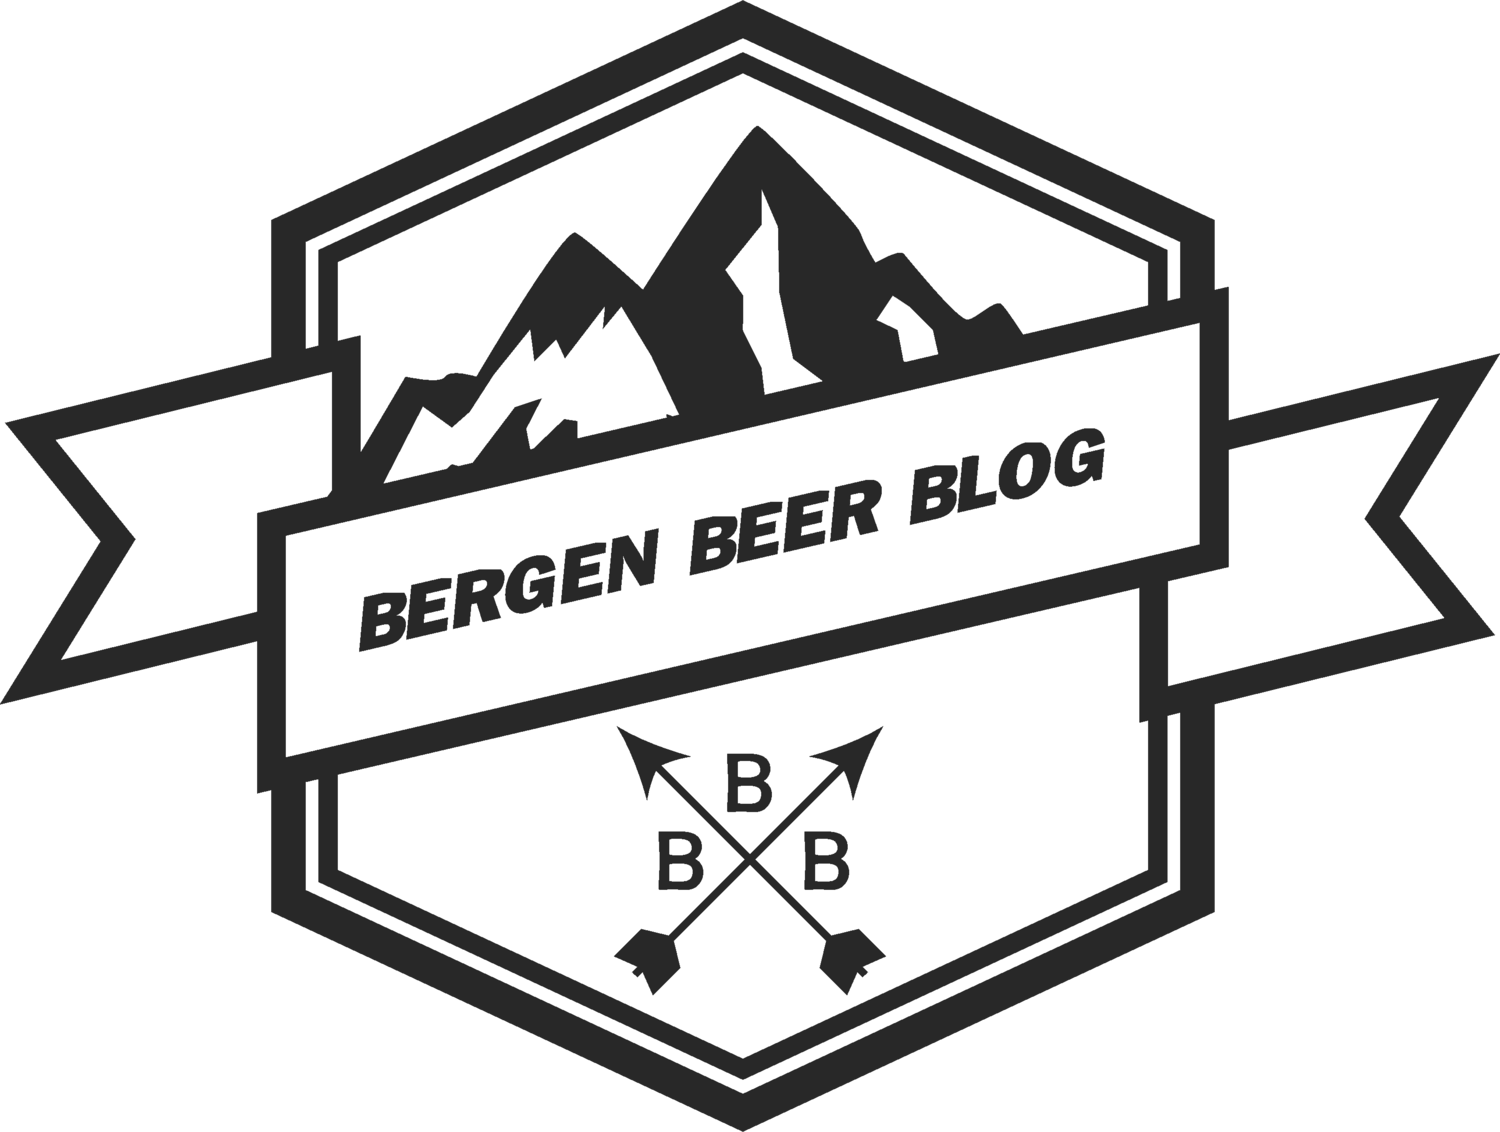 Bergen Beer Blog